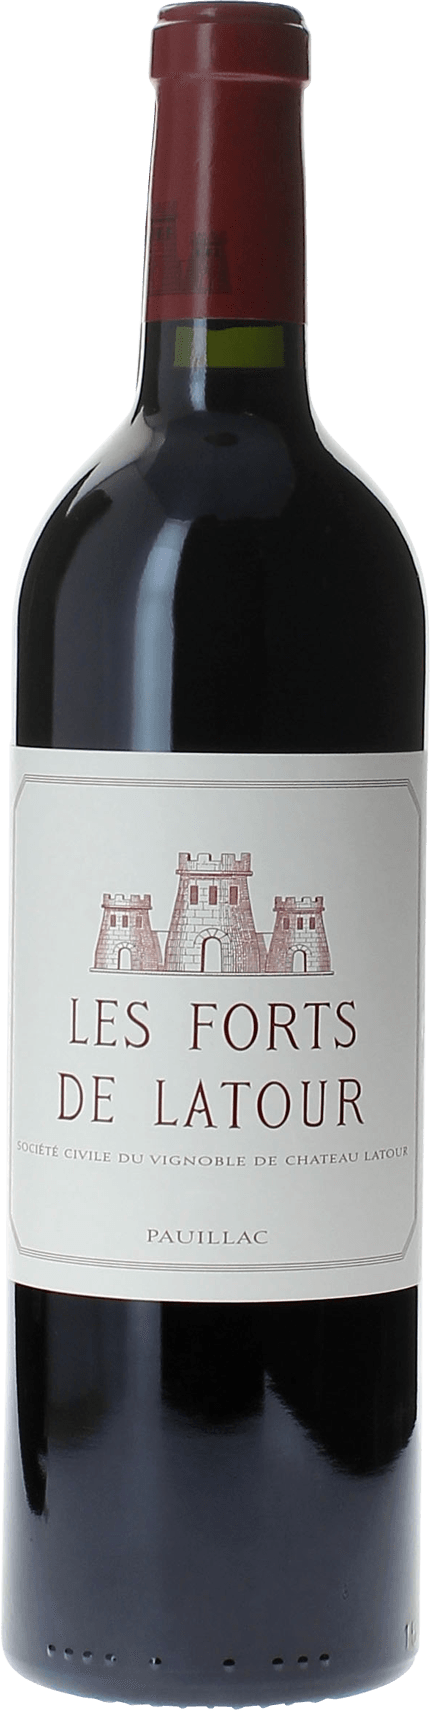 Les forts de latour 1998 2me vin de LATOUR Pauillac, Bordeaux rouge